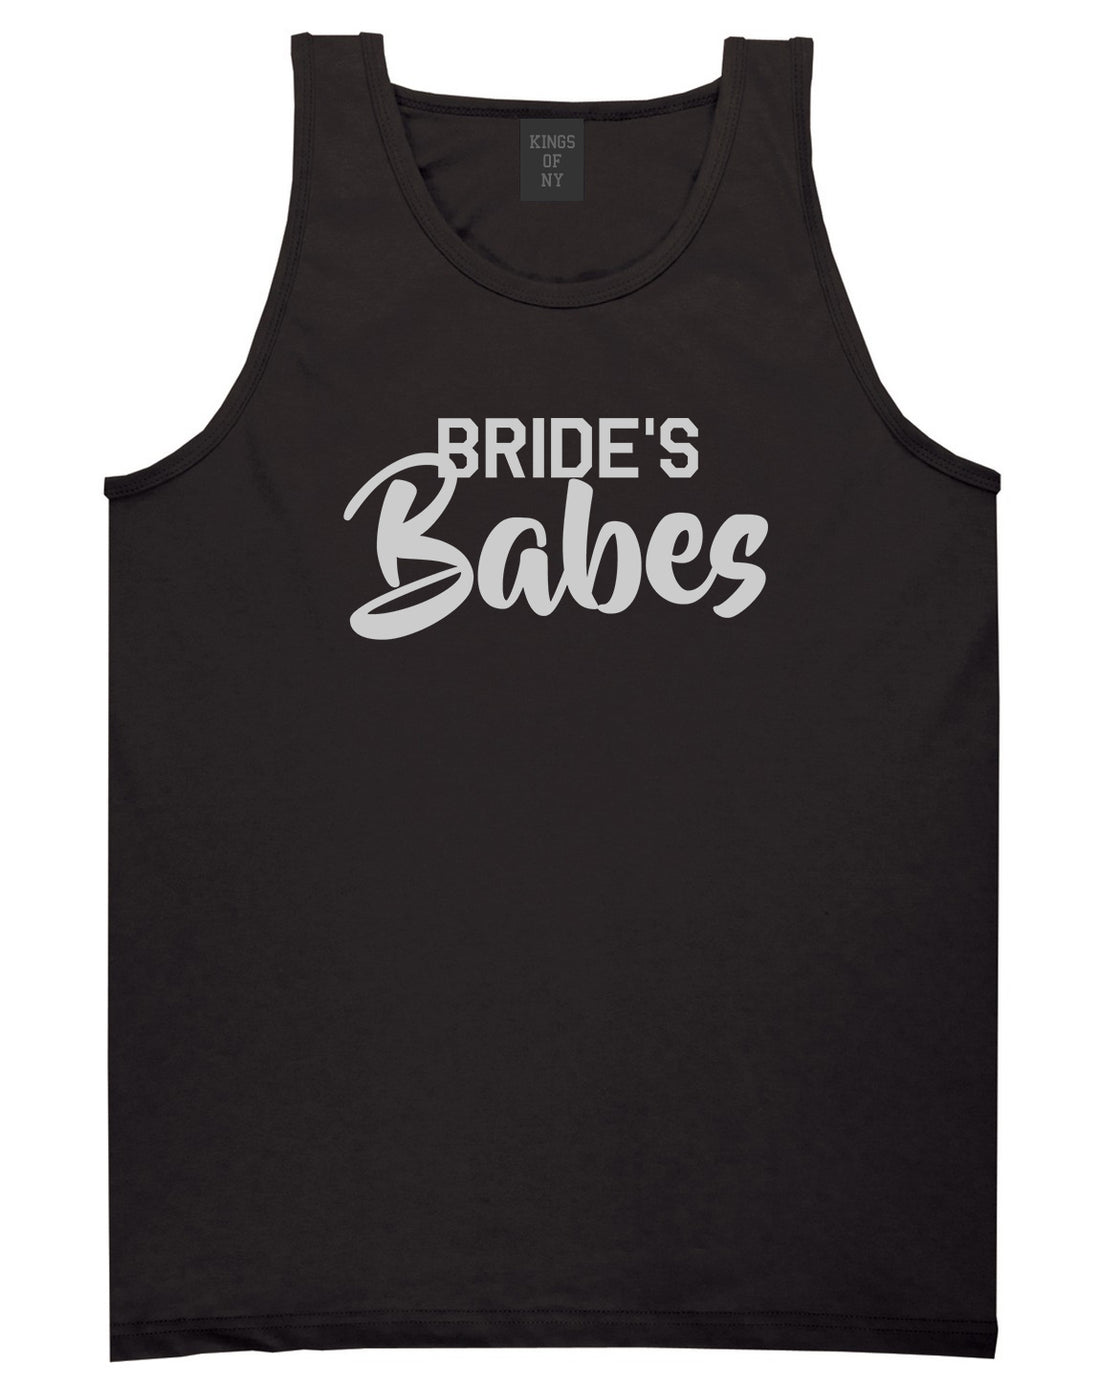 Brides Babes Wedding Mens Black Tank Top Shirt by KINGS OF NY